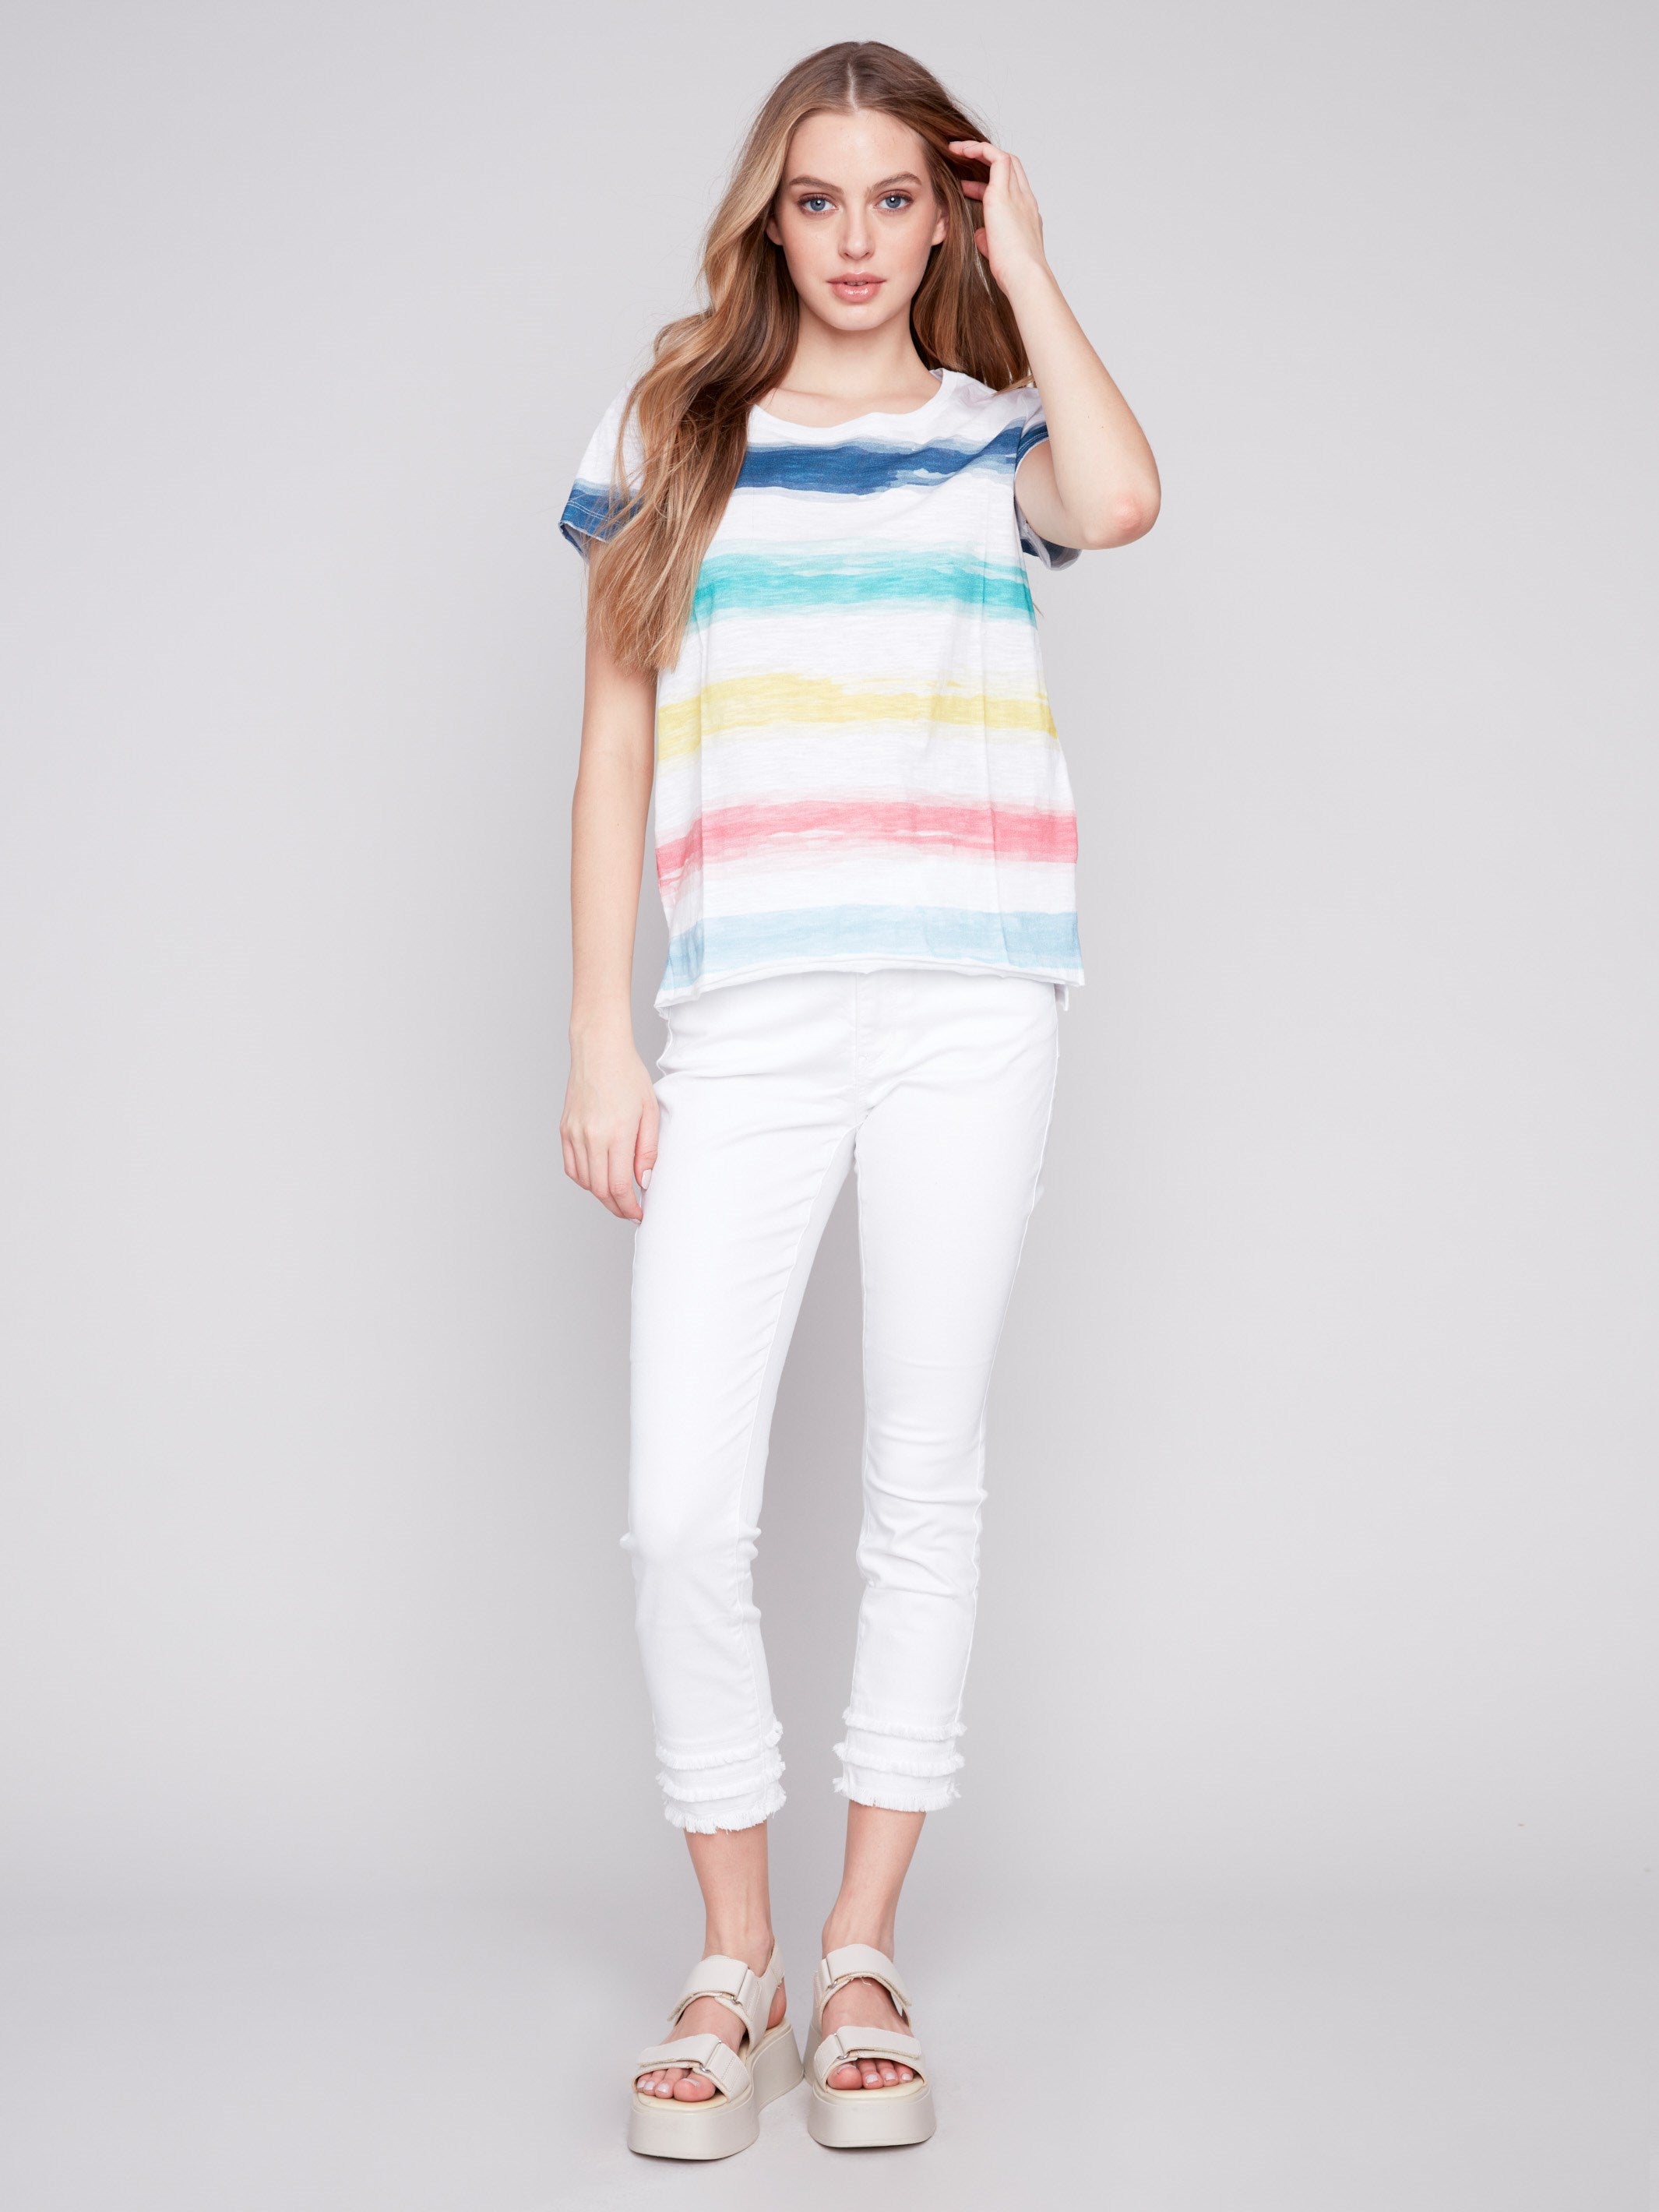 Printed Cotton Slub Knit T-Shirt - Stripes